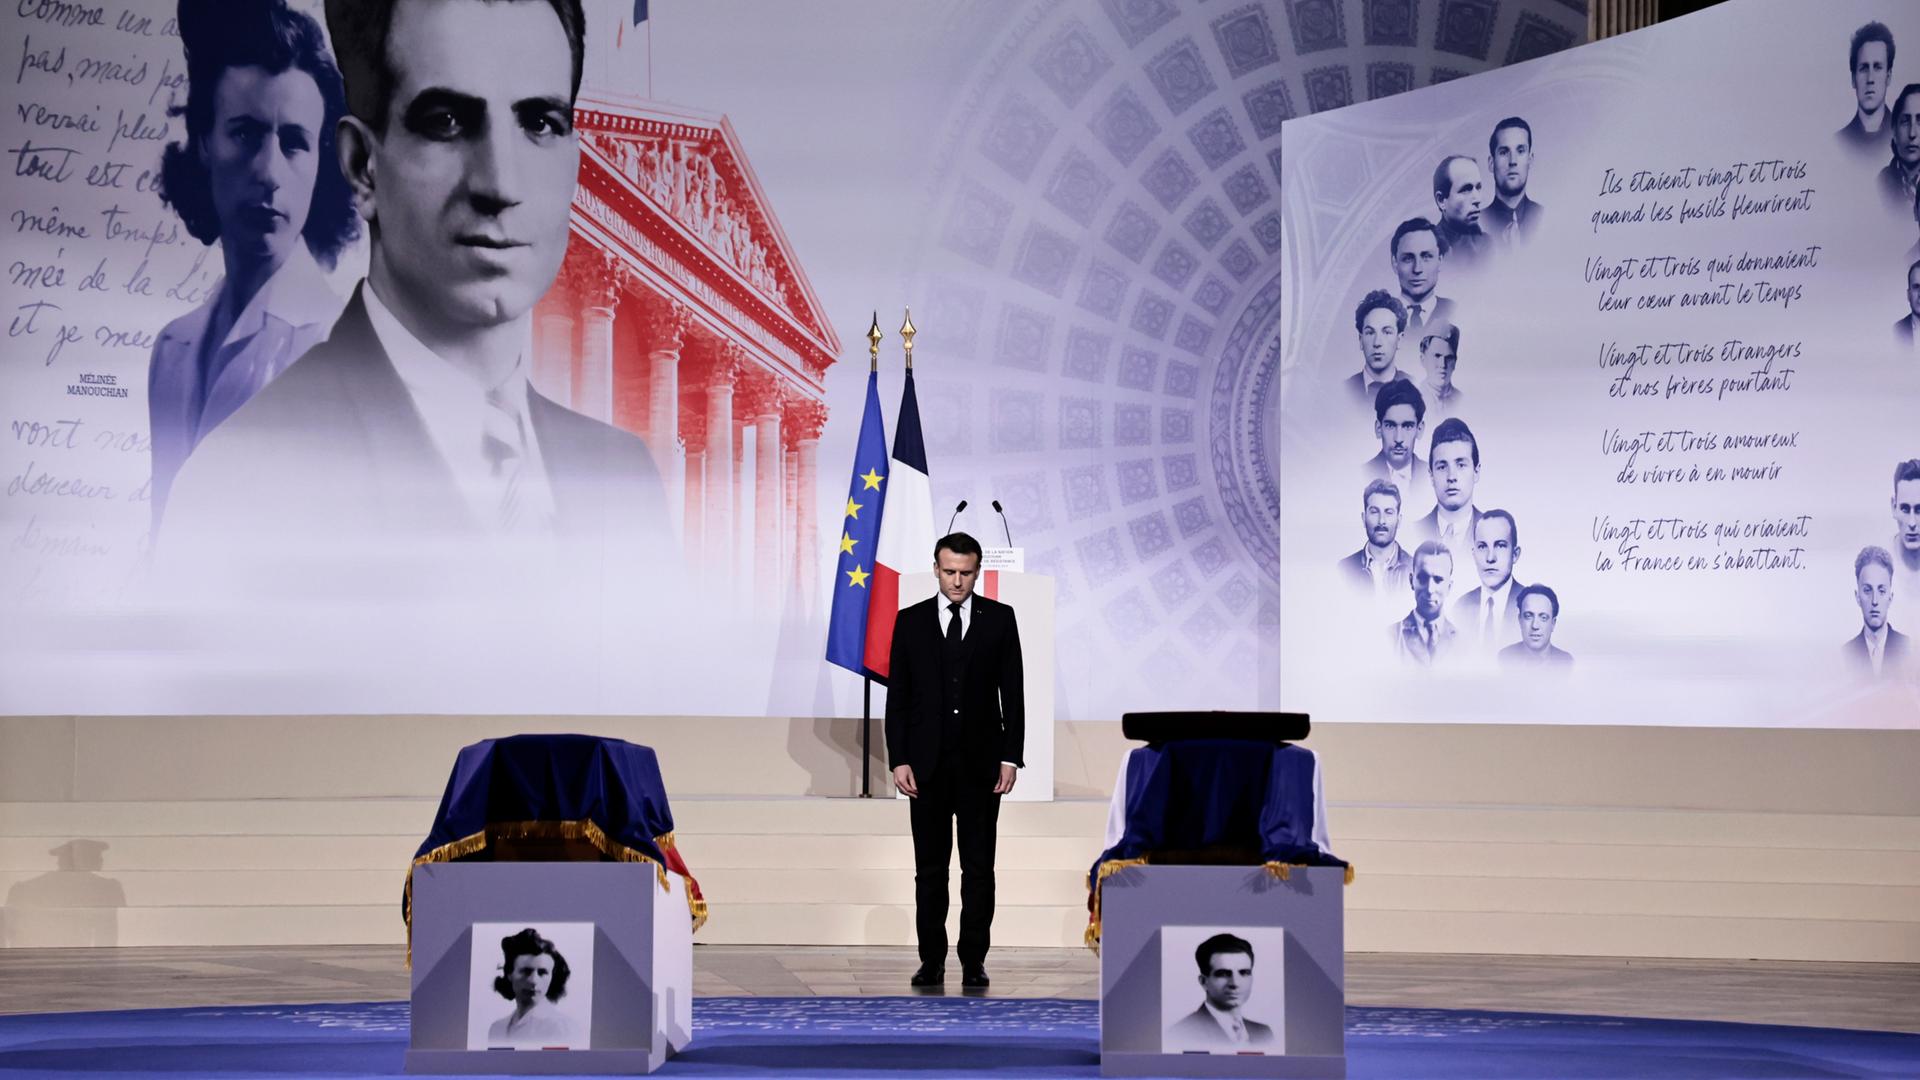 Das Foto zeigt den französischen Präsidenten Emmanuel Macron. Er erweist Missak Manouchian und seiner Frau Melinee Manouchian im Pantheon-Denkmal während ihrer Einführungszeremonie die Ehre.